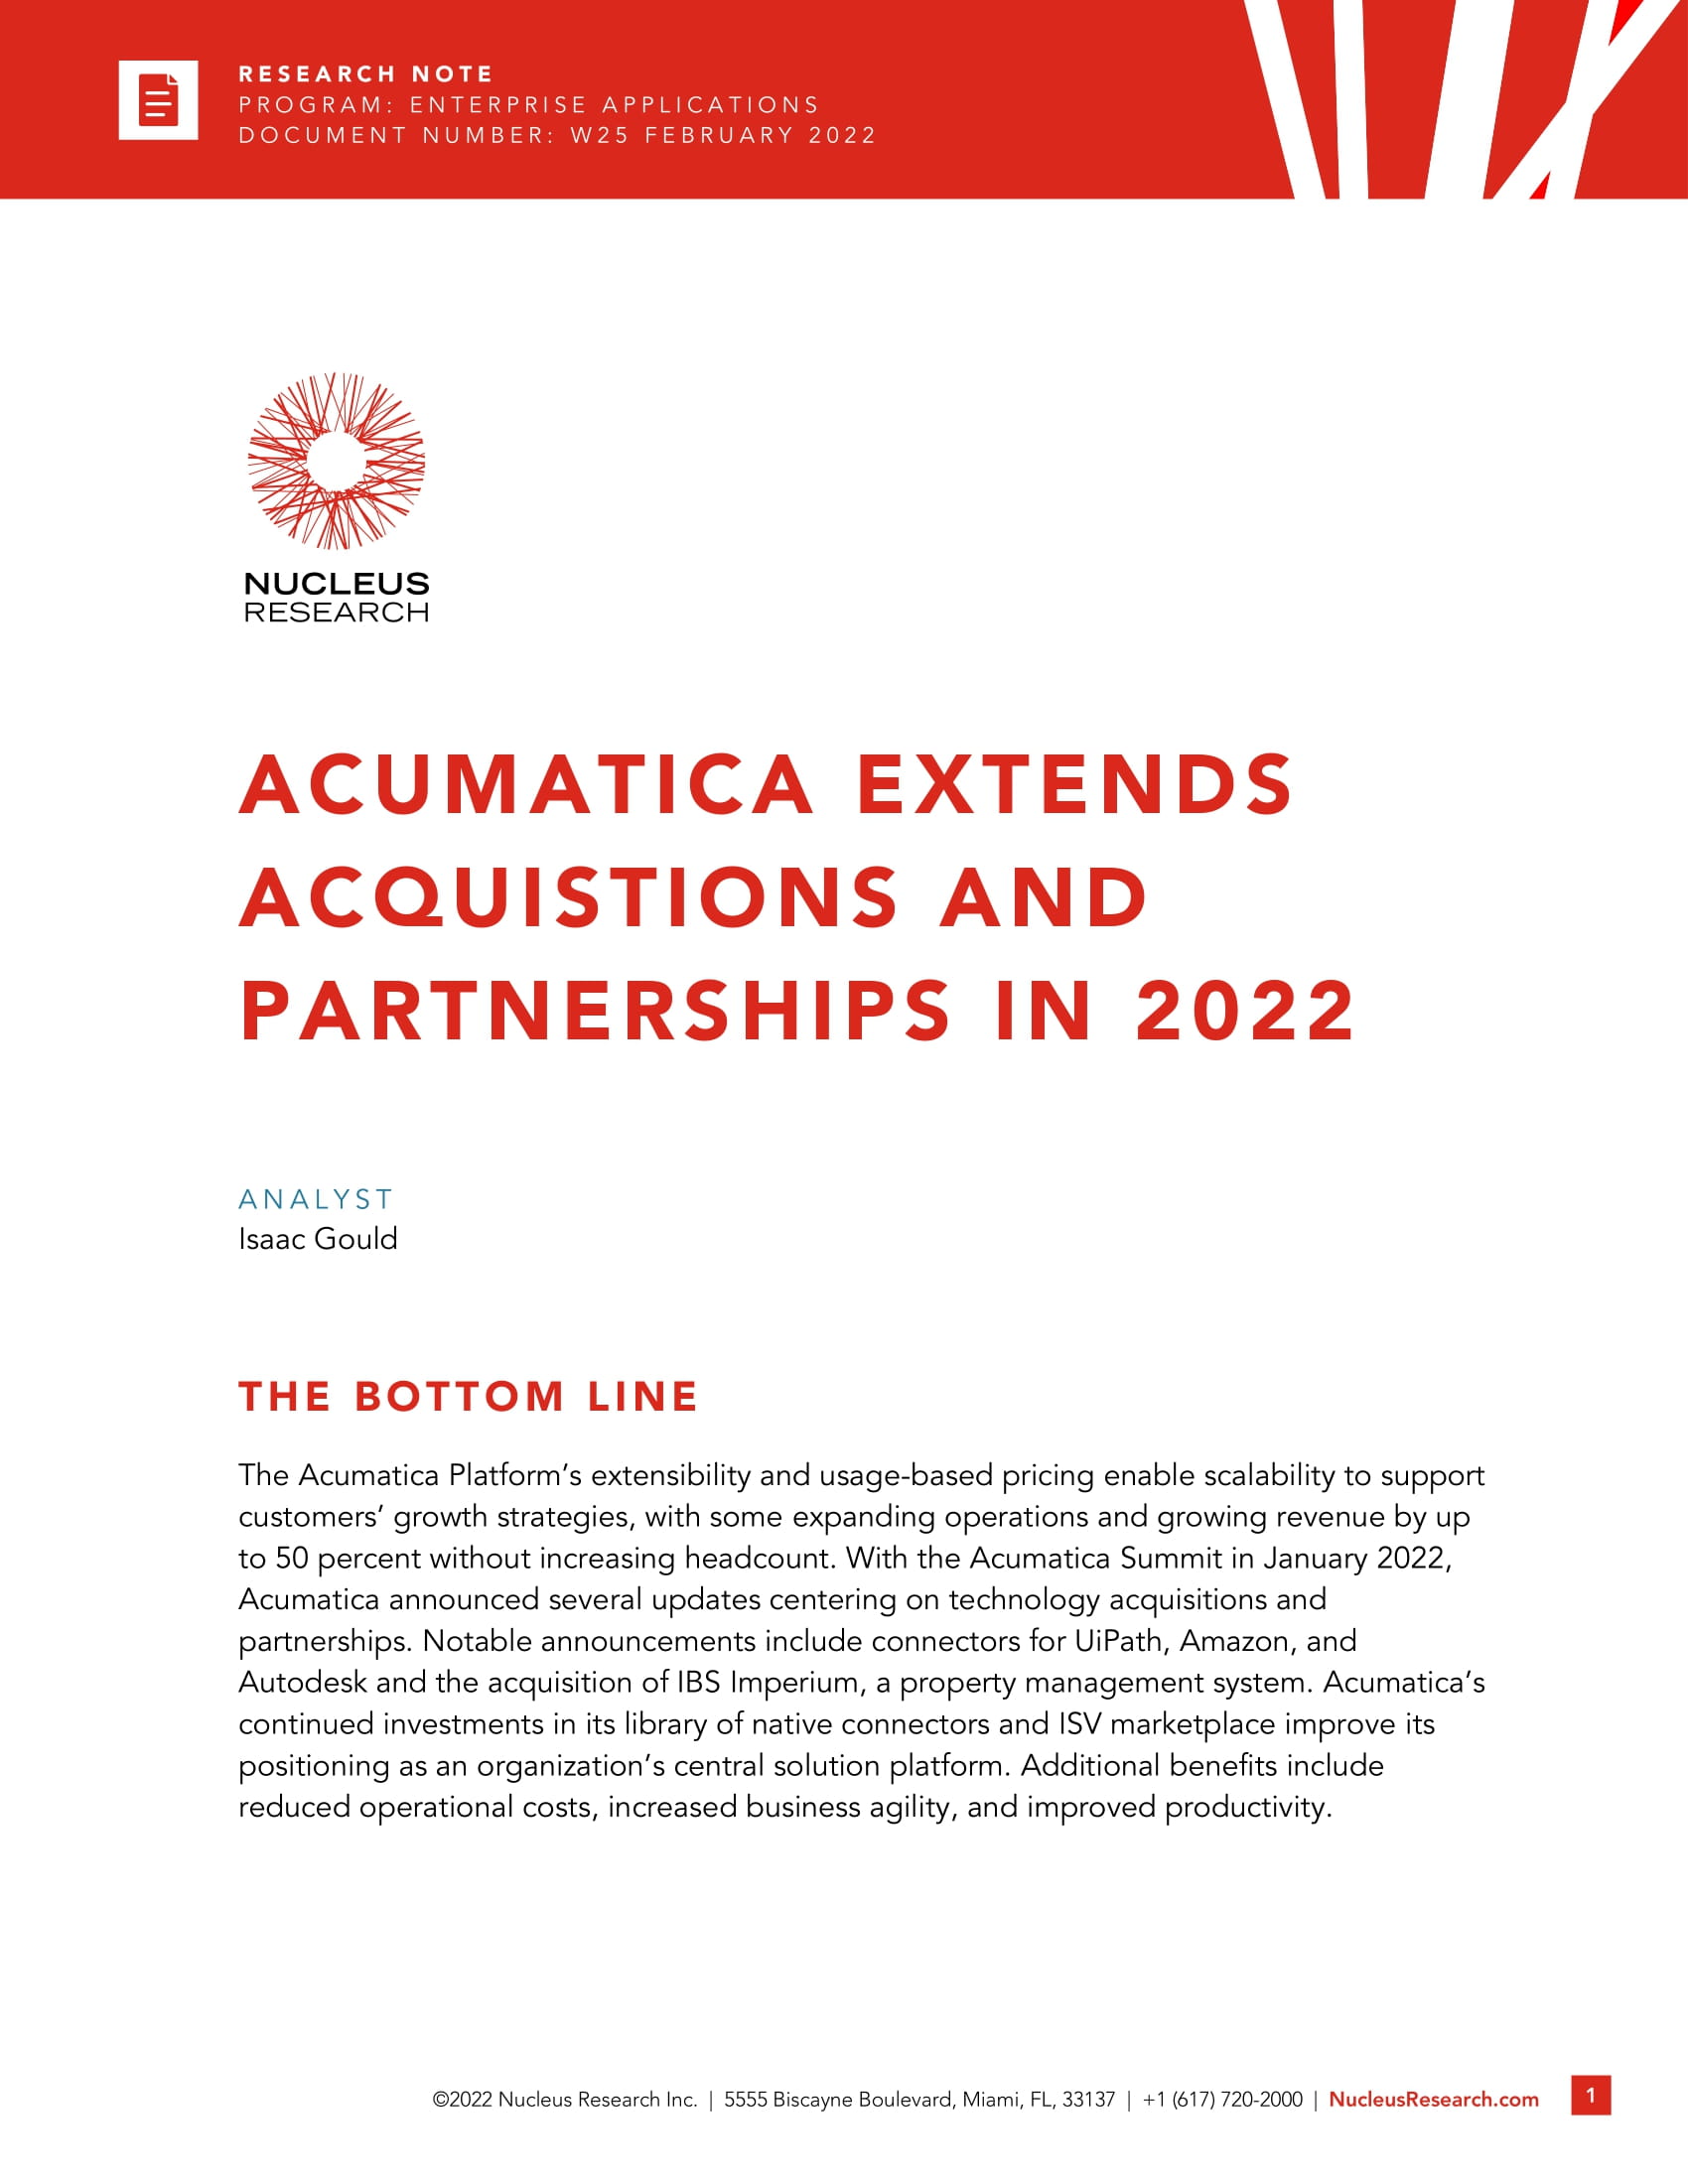 Aproveche las nuevas adquisiciones y asociaciones de Acumatica 